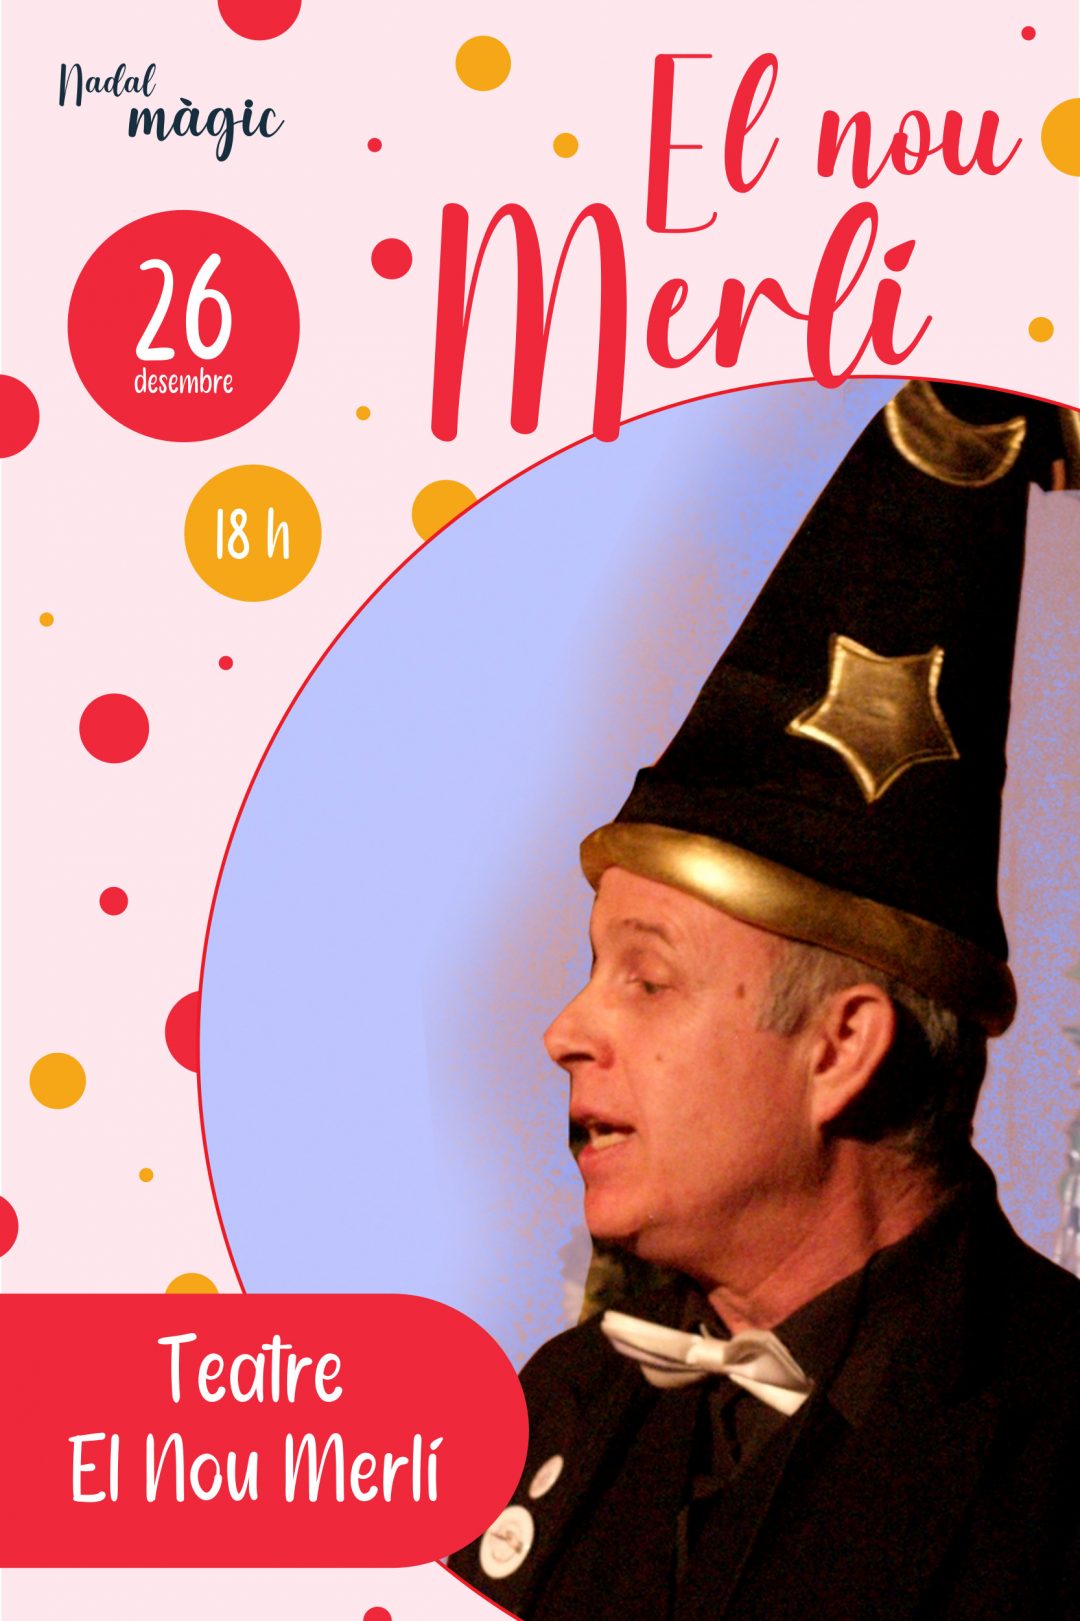 Ciclo Nadal màgic: Teatre El Nou Merlí, El nou Merlí